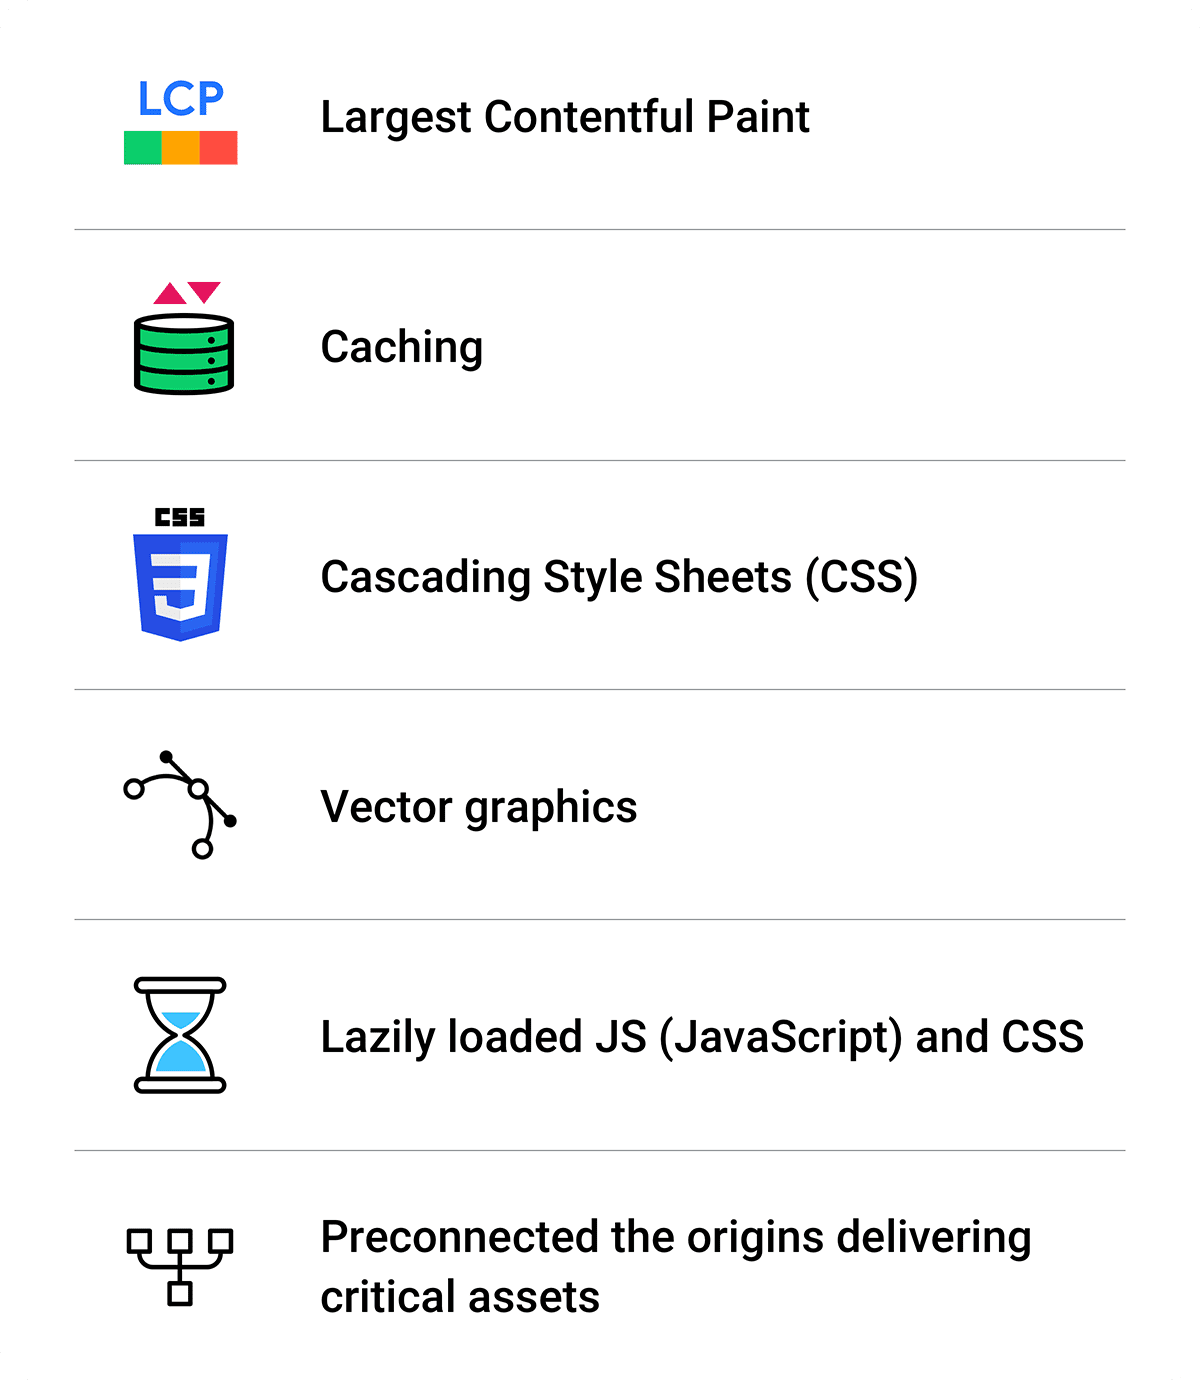 최적화 요약: 최대 콘텐츠 렌더링 시간, 캐싱, CSS, 벡터 그래픽, 지연 로드된 JS 및 CSS, 사전 연결